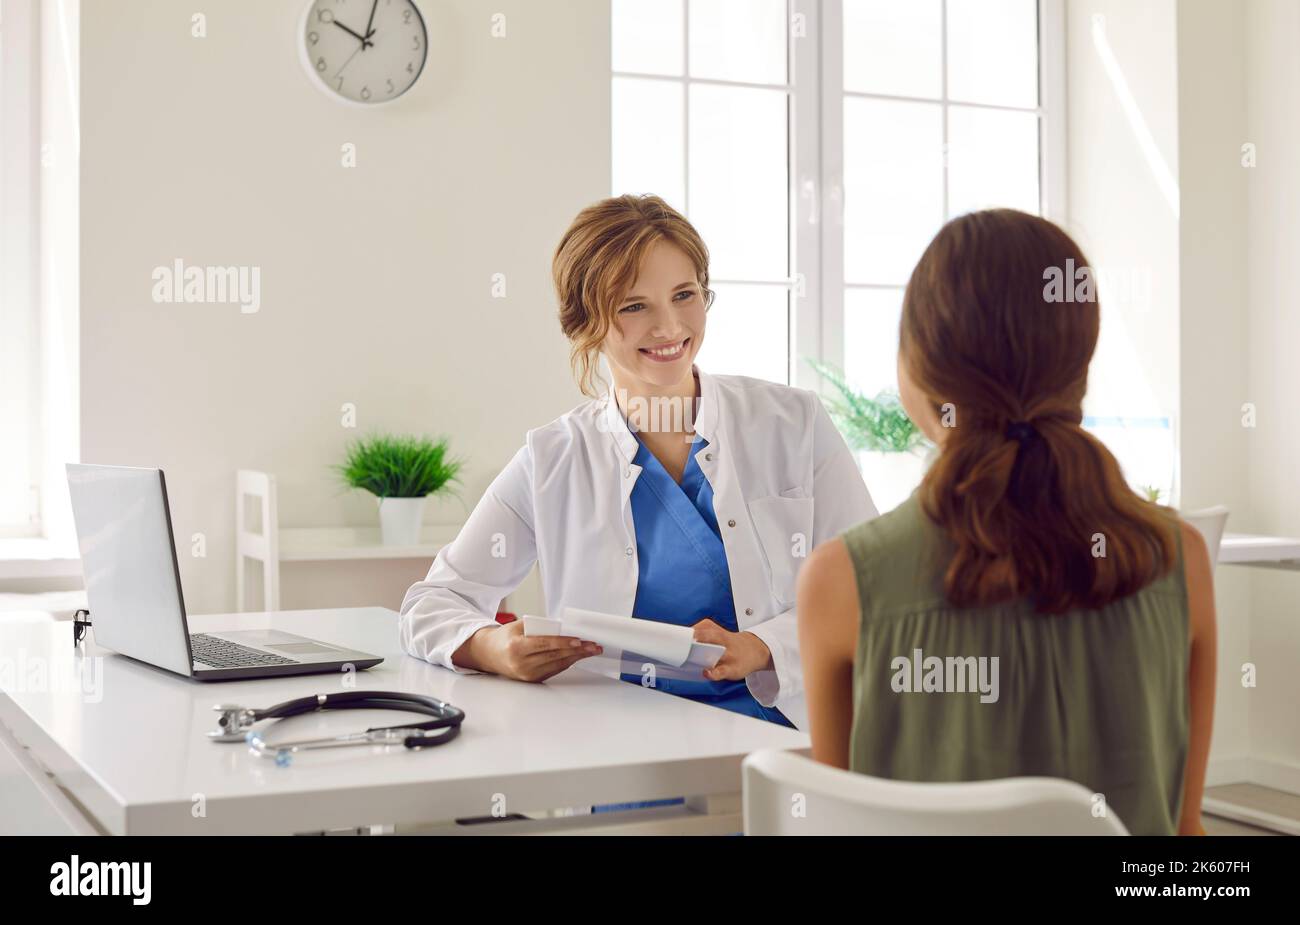 Freundliche Ärztin, die an ihrem Tisch sitzt und einem Kind eine medizinische Beratung gibt Stockfoto